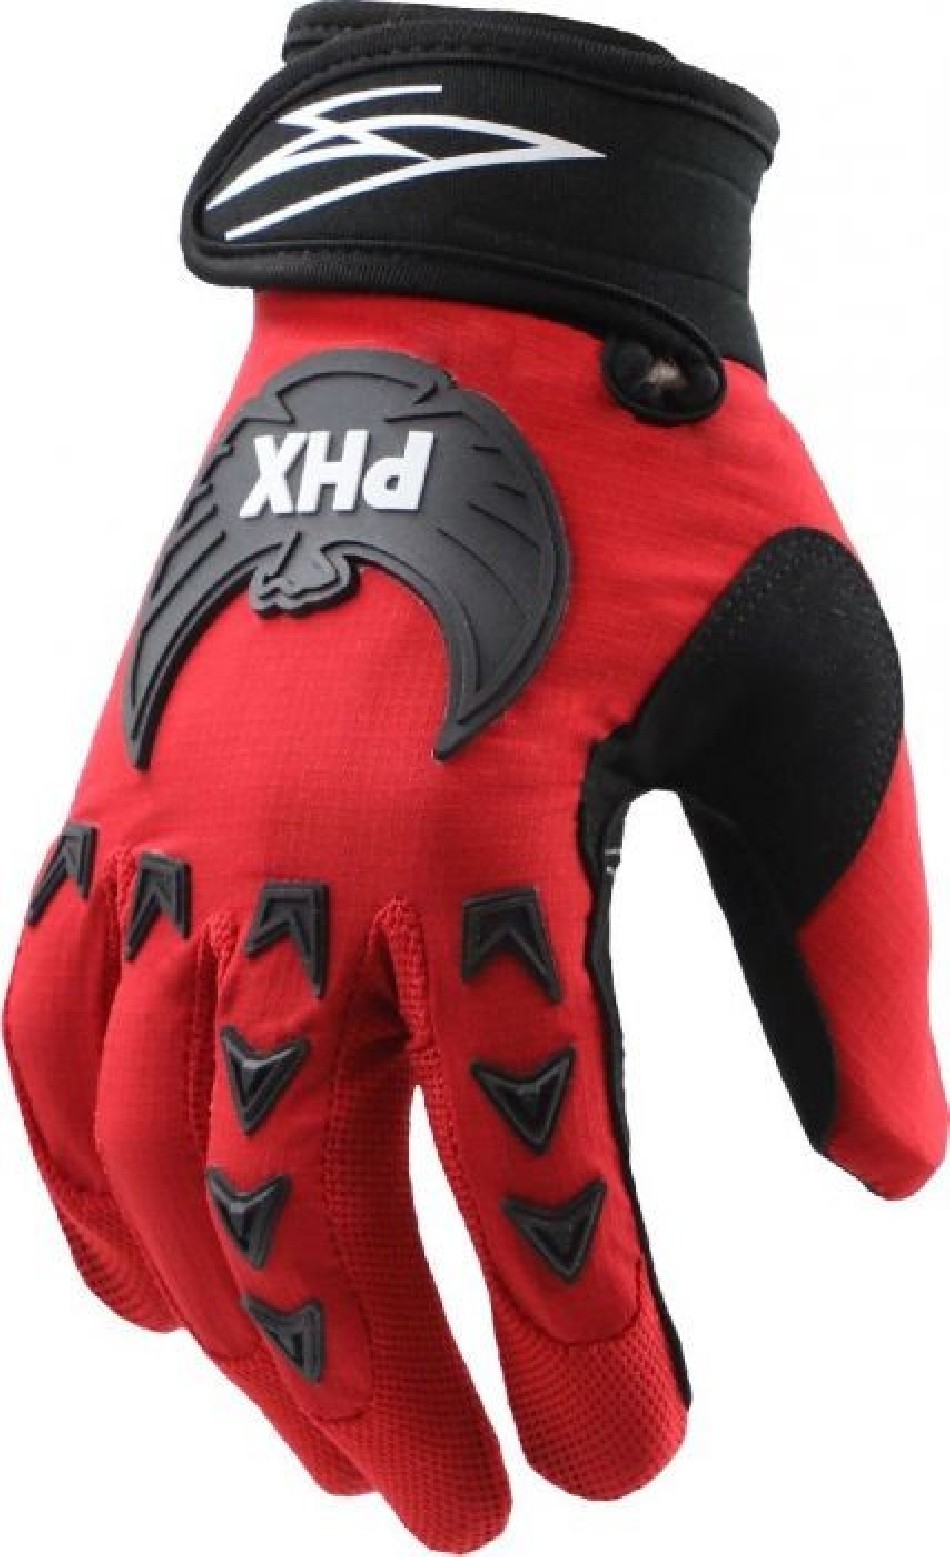 Glove for atv and motocross - VTT LACHUTE